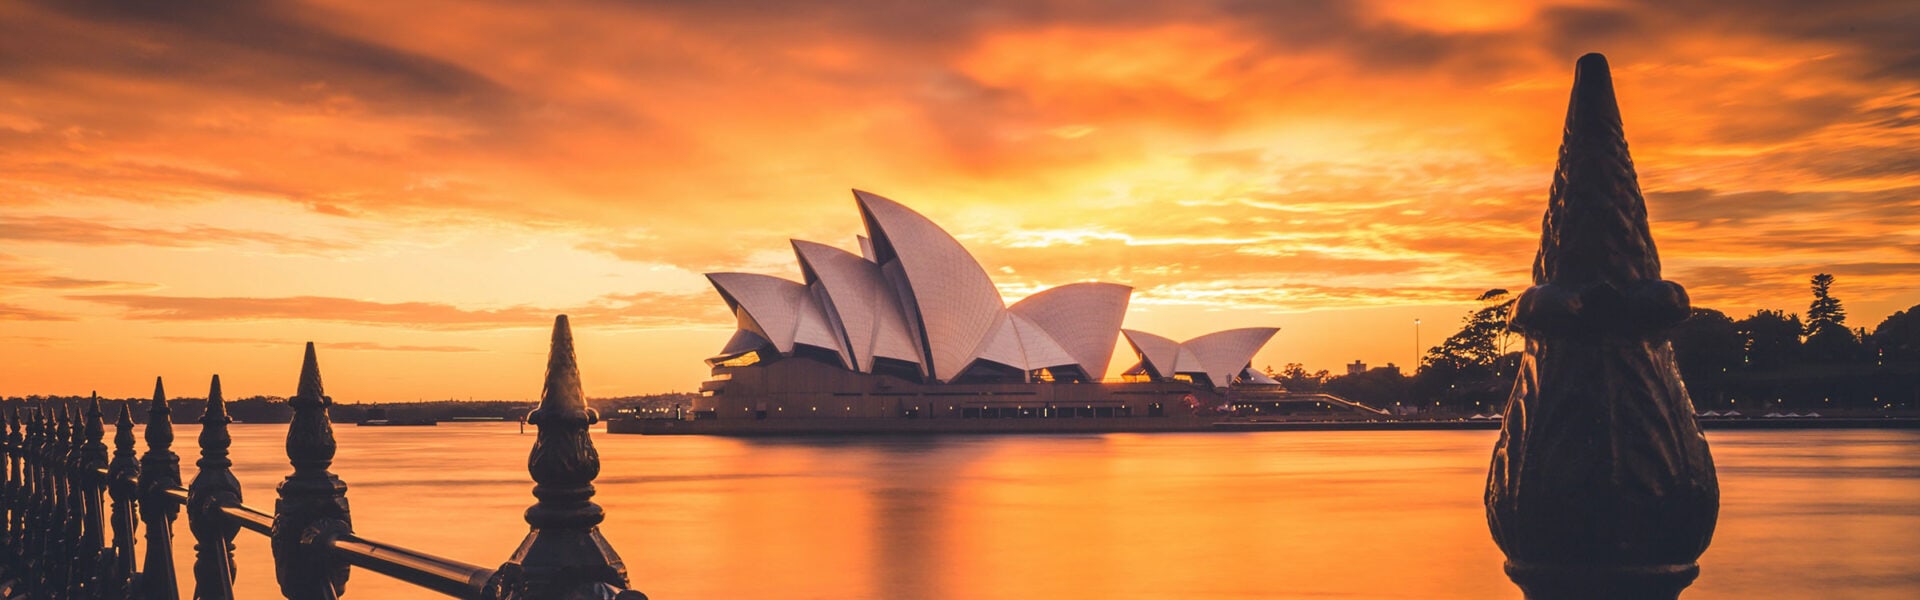 Sydney Opera House during an orange sunset